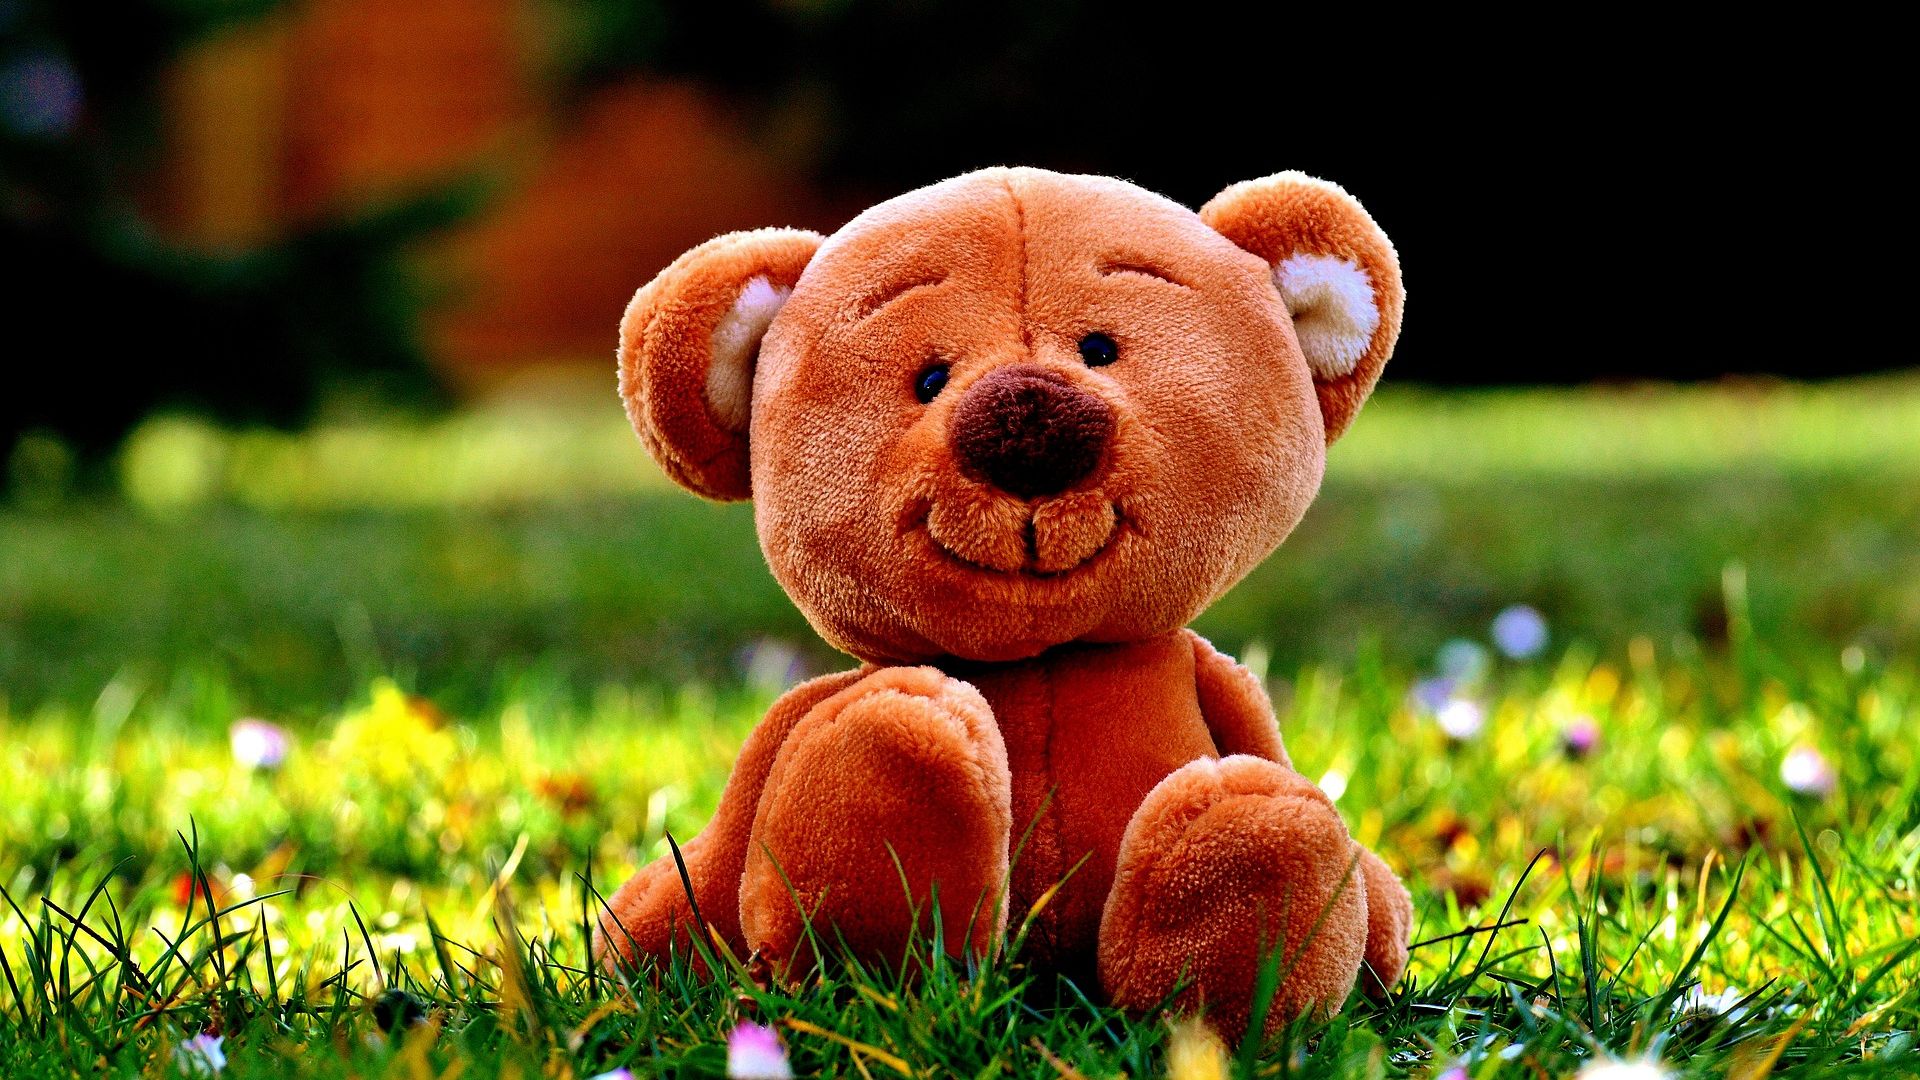 Desktop Wallpaper Smiling Teddy Bear, Toy, Meadow, Grass, Hd Image,  Picture, Background, Kken9l